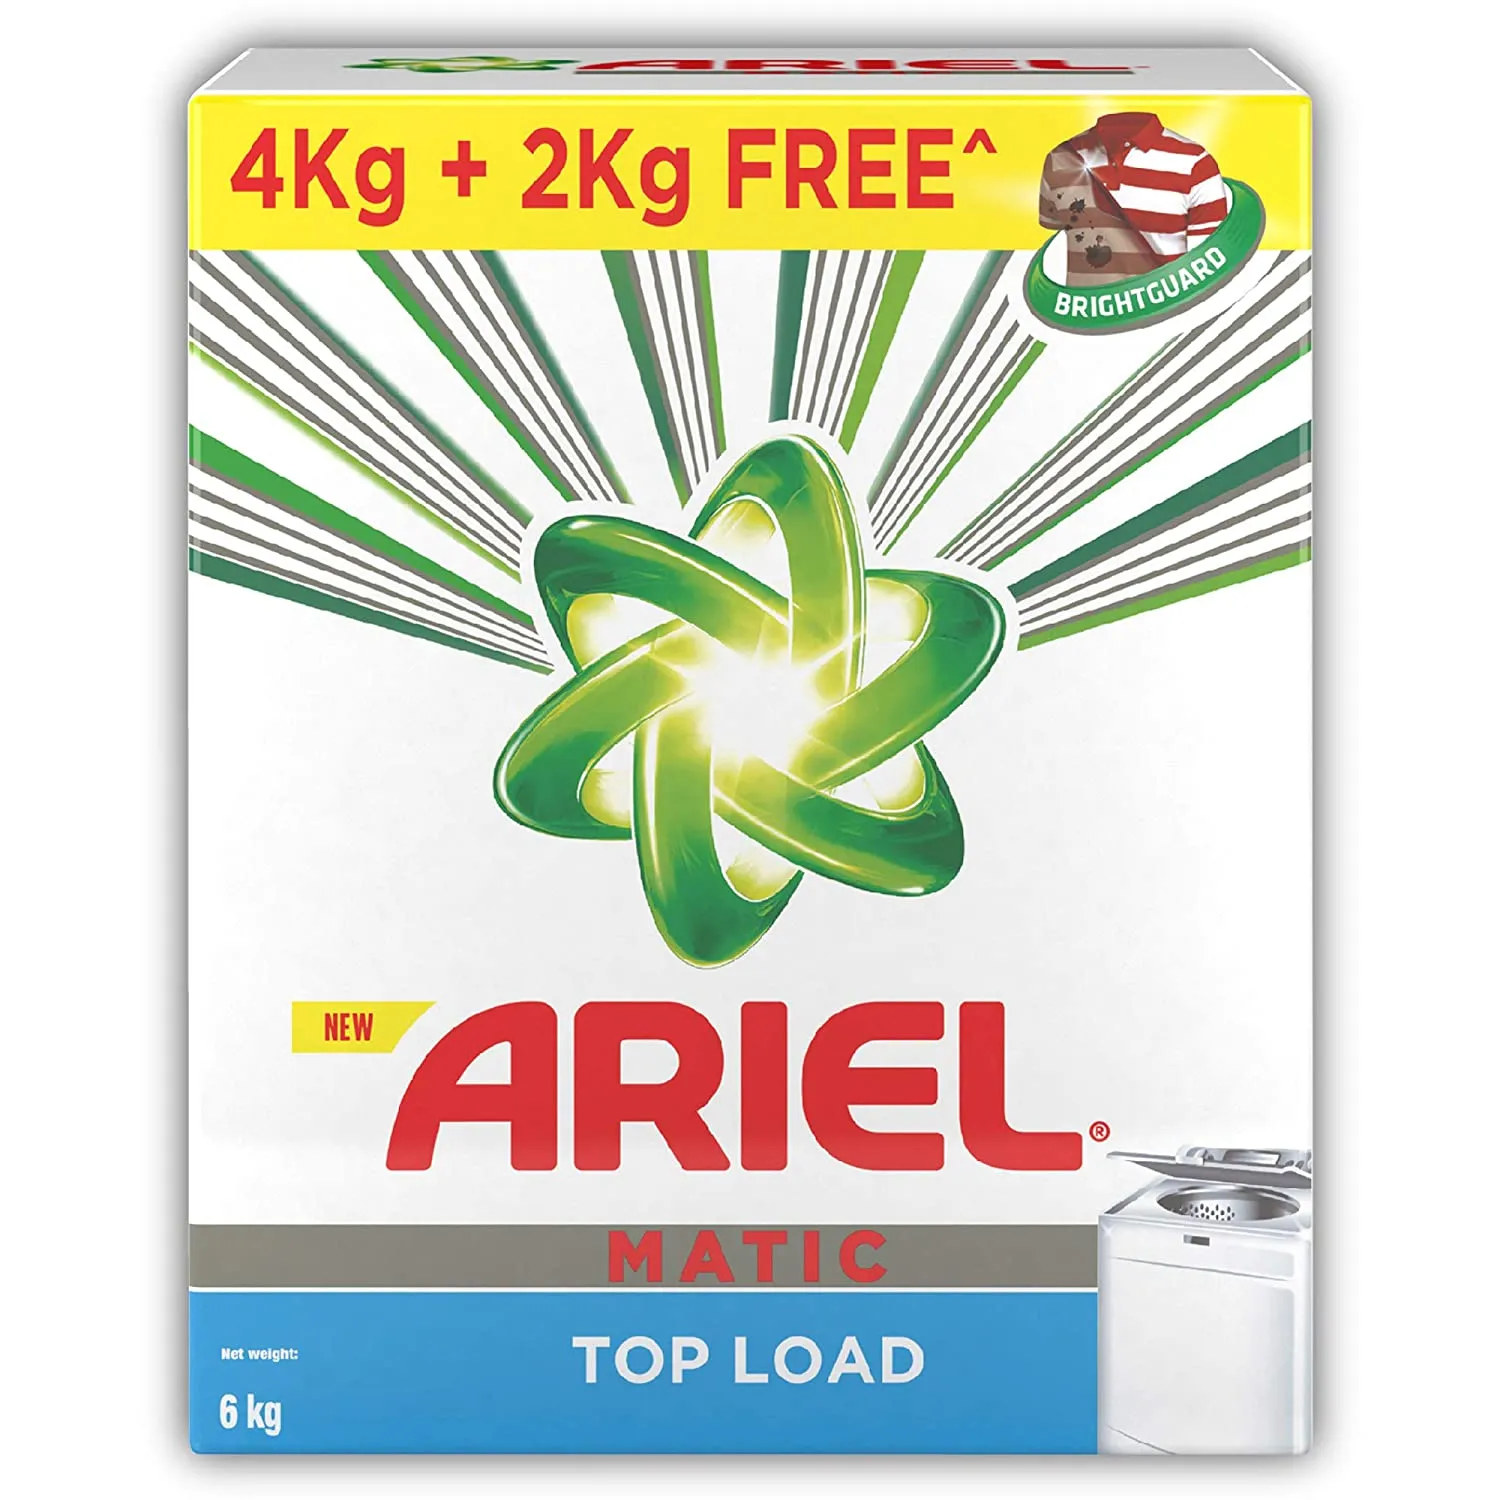 ARIEL MATIC TL(4+2KG)FREE